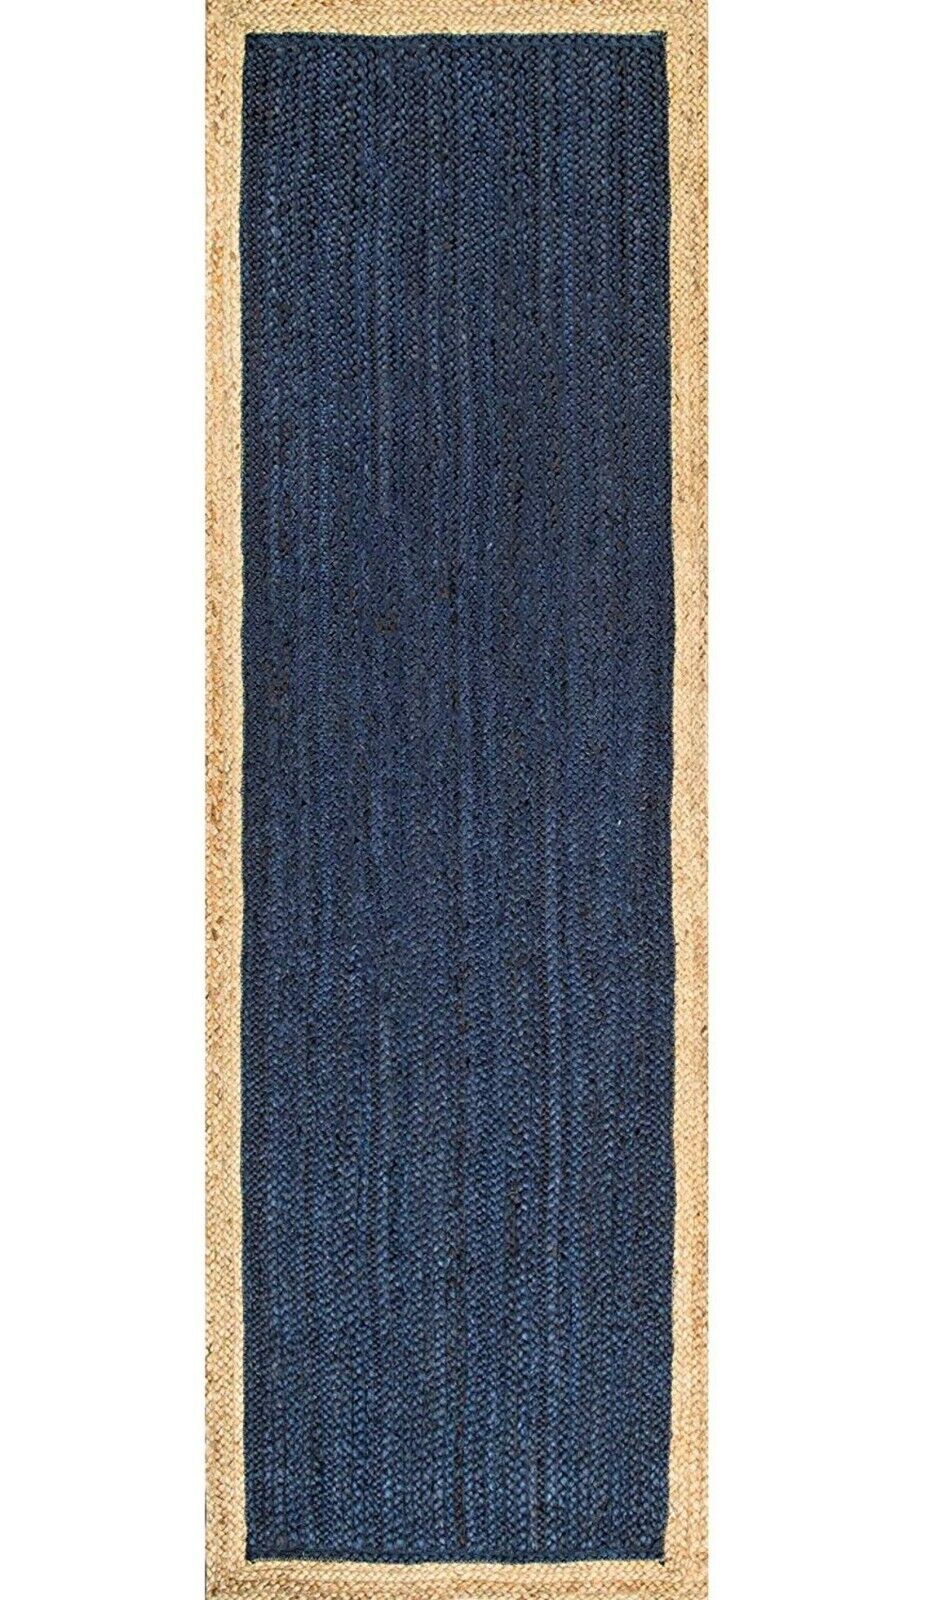 Rug 100%Blue Rectangle Runner Handmade Natural Border Floor Mat Decor Modern Rug Prawdziwie niska cena